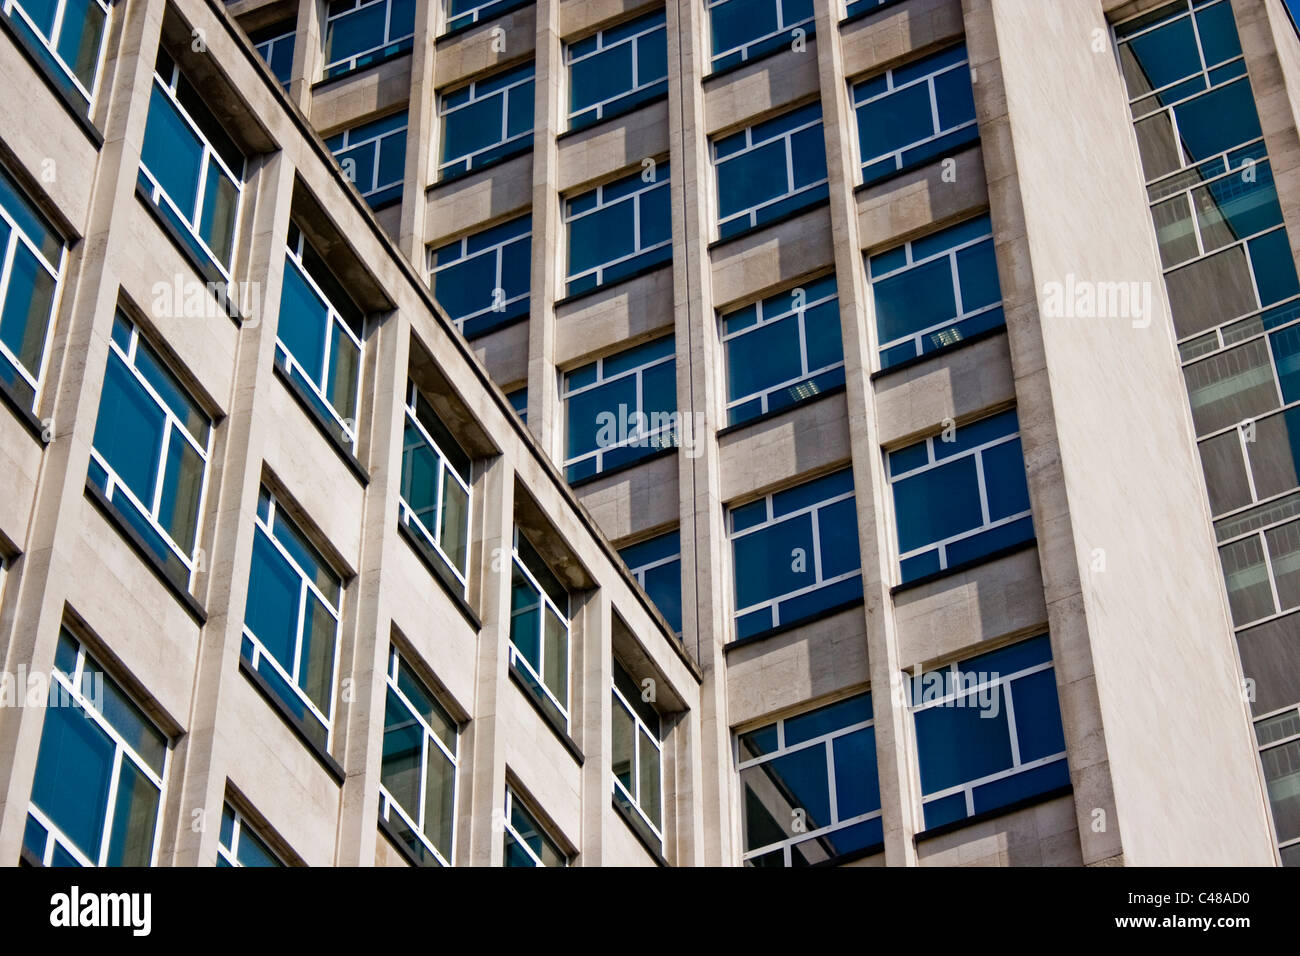 Ventanas de un bloque de oficinas concretas reflejan un cielo azul. Foto de stock